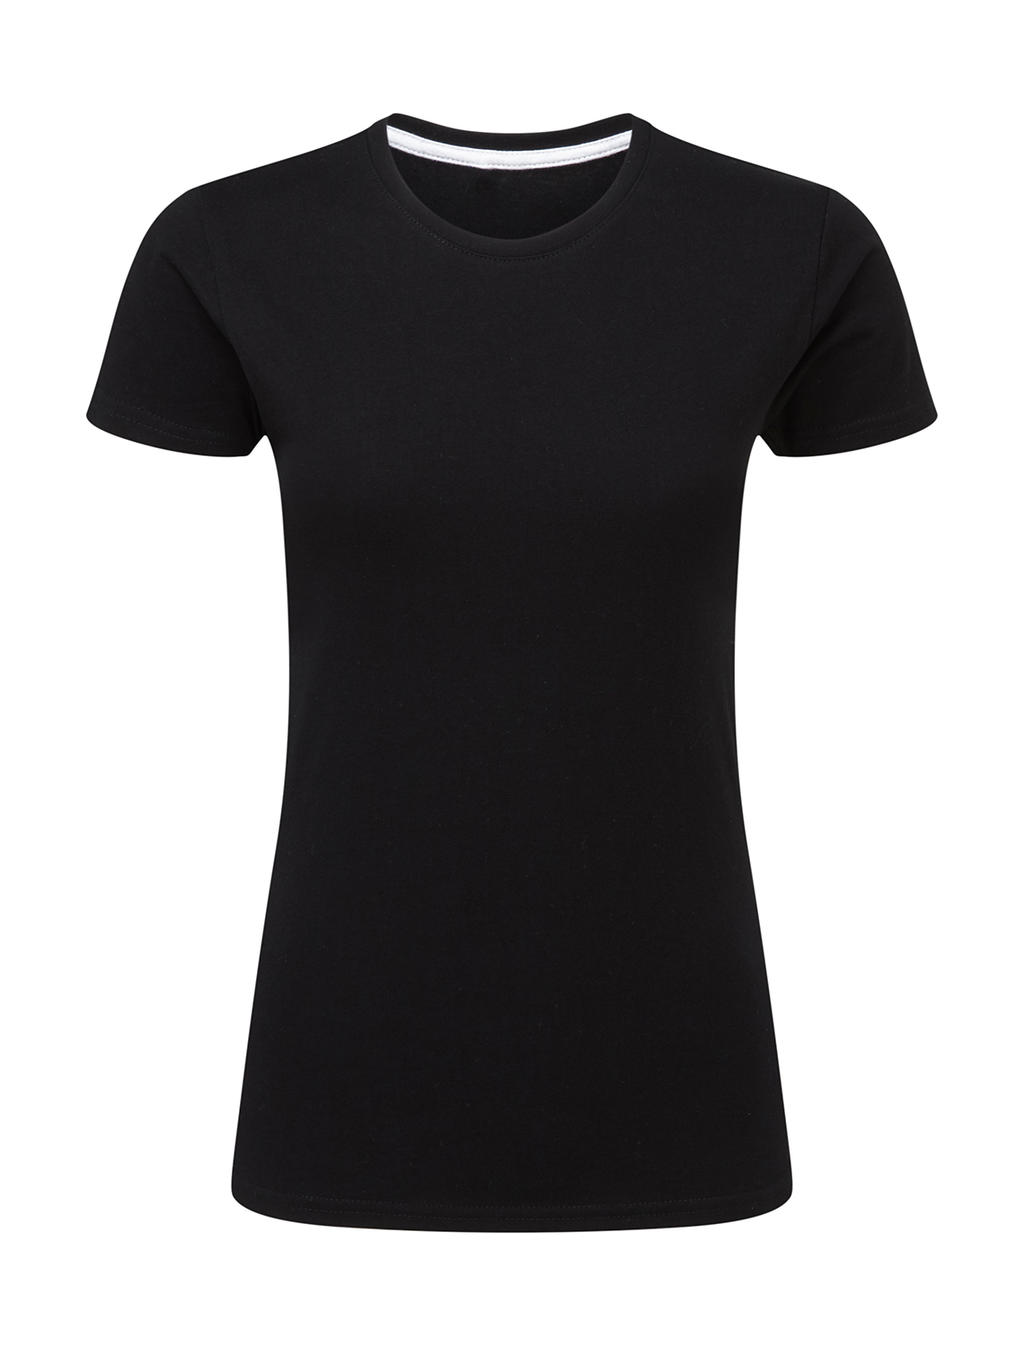 Dokonale potlačiteľné dámske tričko bez štítku - dark black